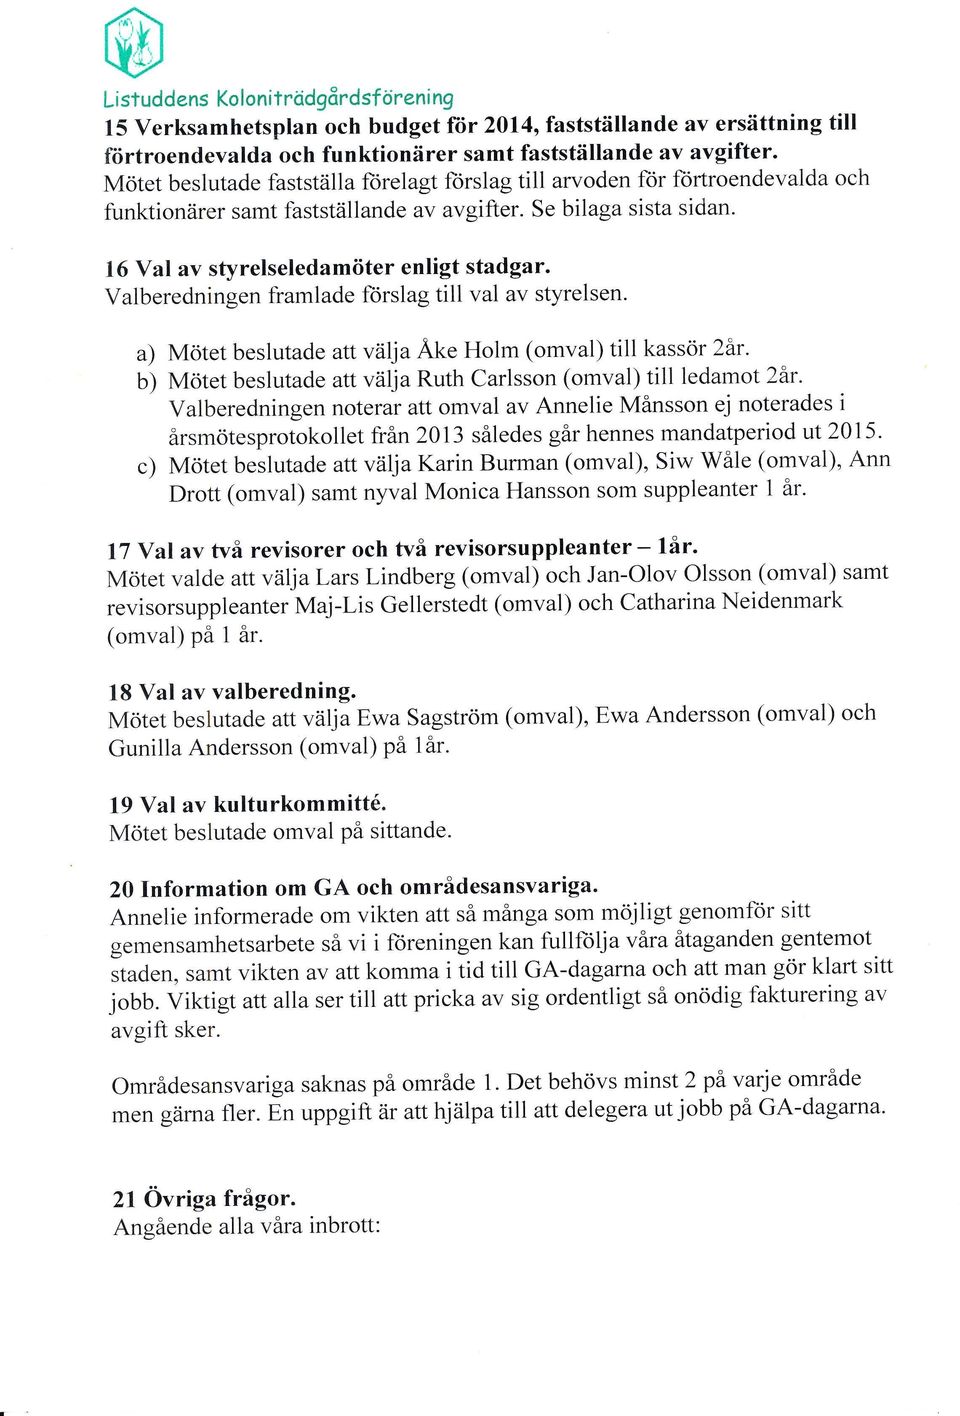 Valberedningen framlade forslag till val av styrelsen. a) Mötet beslutade attväijaäke Holm (omval) till kassör 2år.